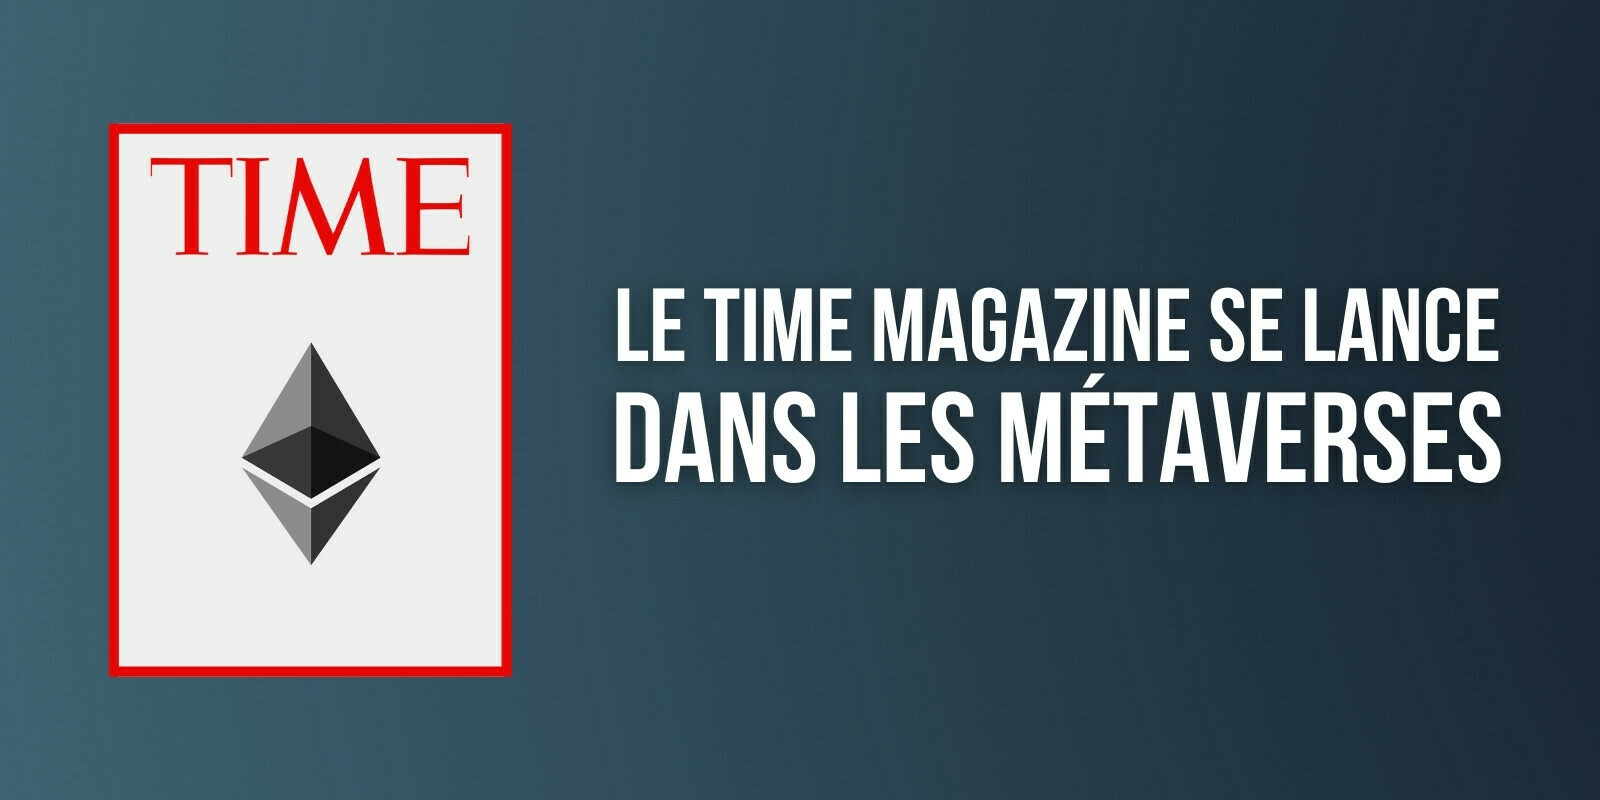 Le Time Magazine se tourne vers le métavers et intègre de l'Ether (ETH) à sa trésorerie